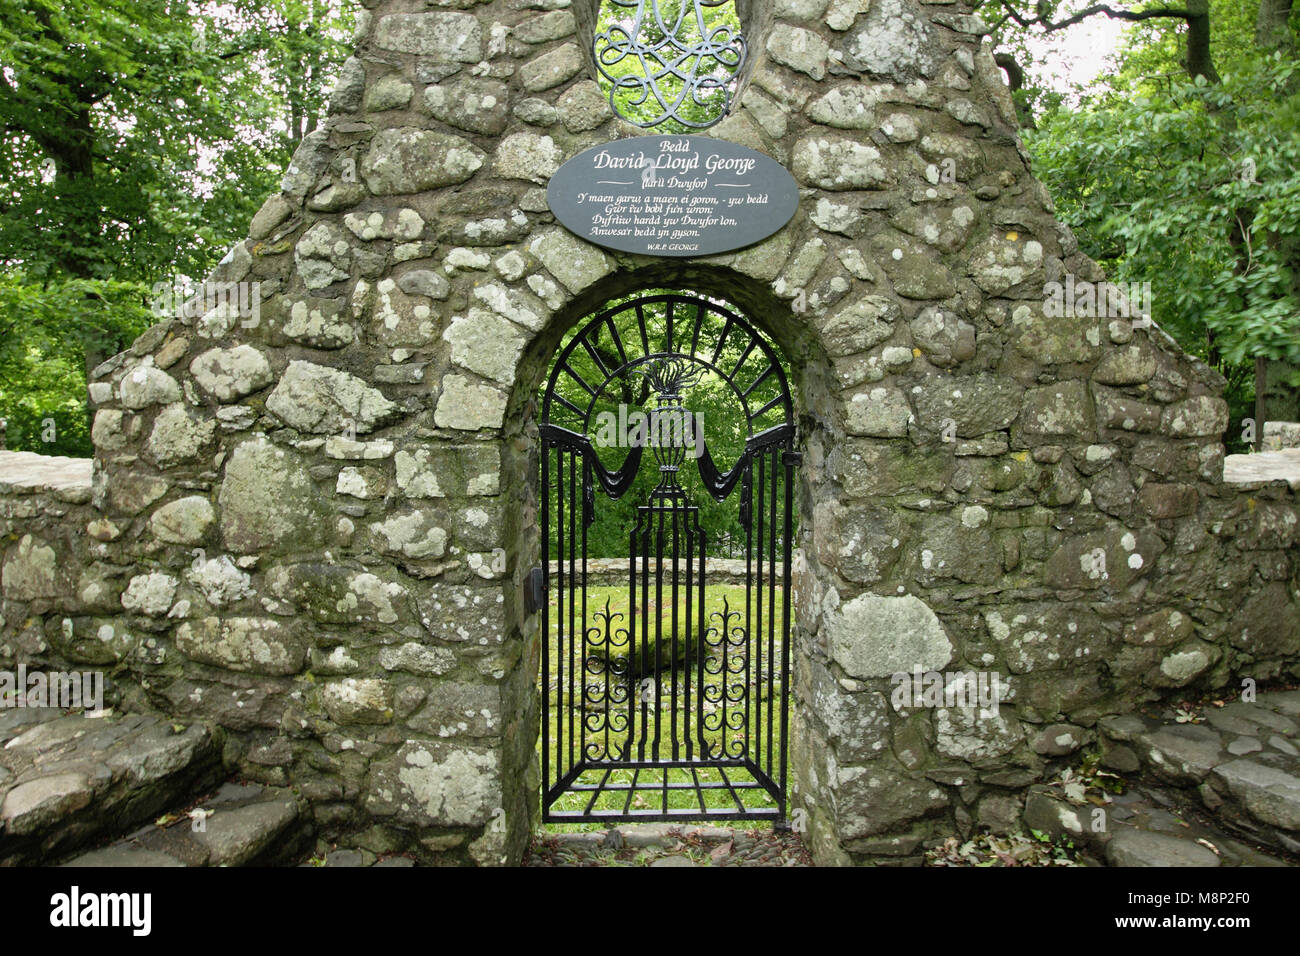 Pays de Galles, Caernarfonshire, Llanystumdwy, Monument de David Lloyd George avec surround en pierre et portail en fer ornemental. Banque D'Images